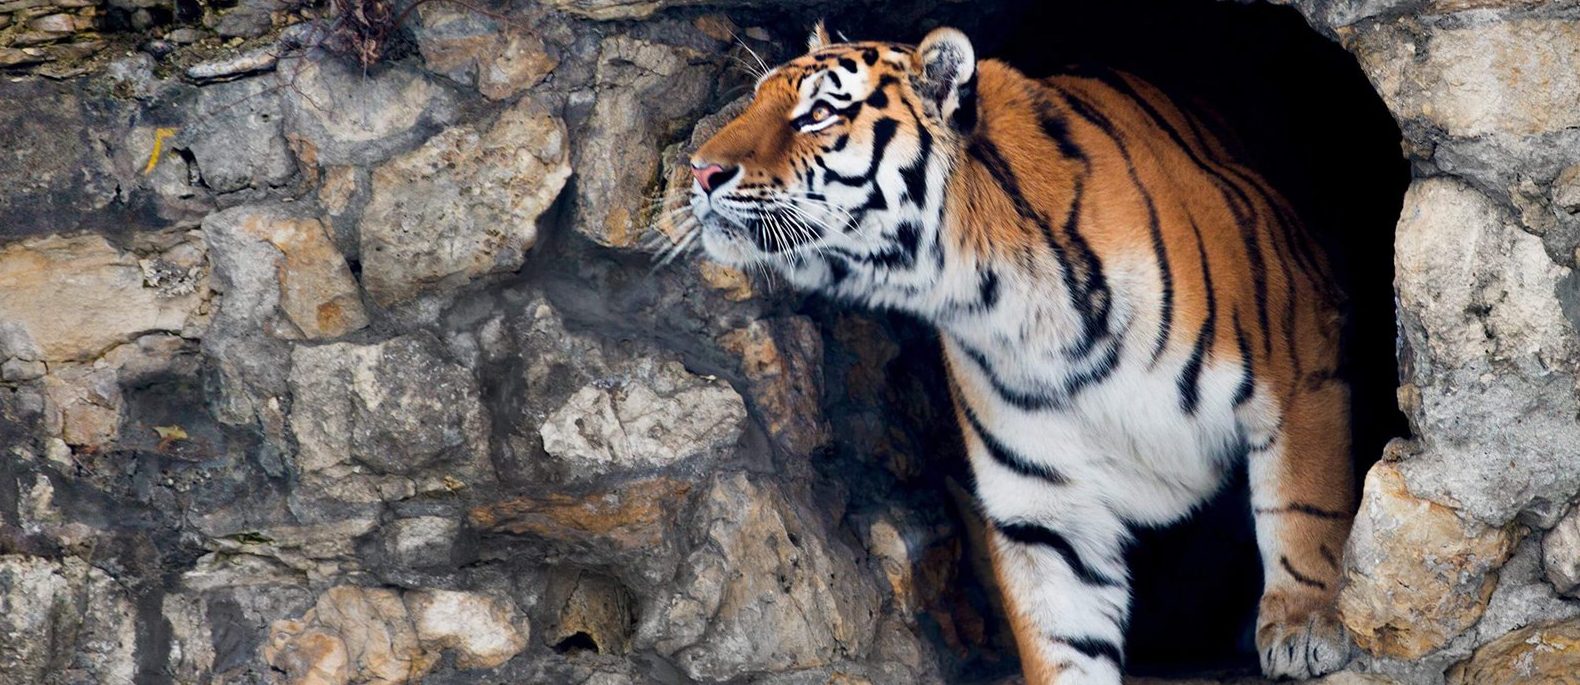 Главная цель даты — рассказать людям о проблеме исчезновения тигров и способах их защиты. Фото: сайт мэра Москвы